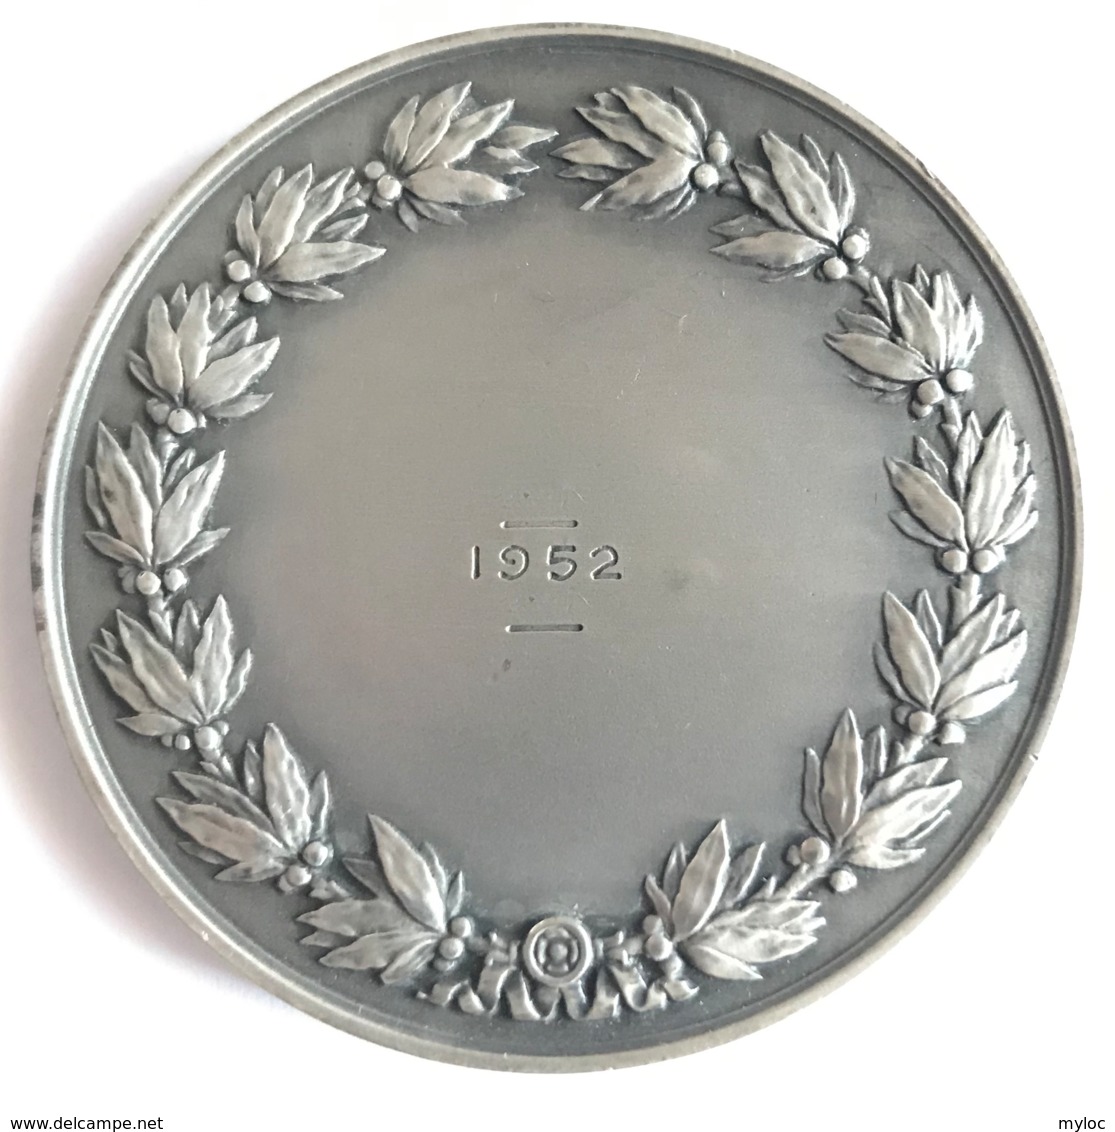 Médaille Assurances Compagnies Du Soleil. R.B. Baron. 1952. Poinçon 1 Argent. Diam. 50mm - 65gr - Professionals / Firms